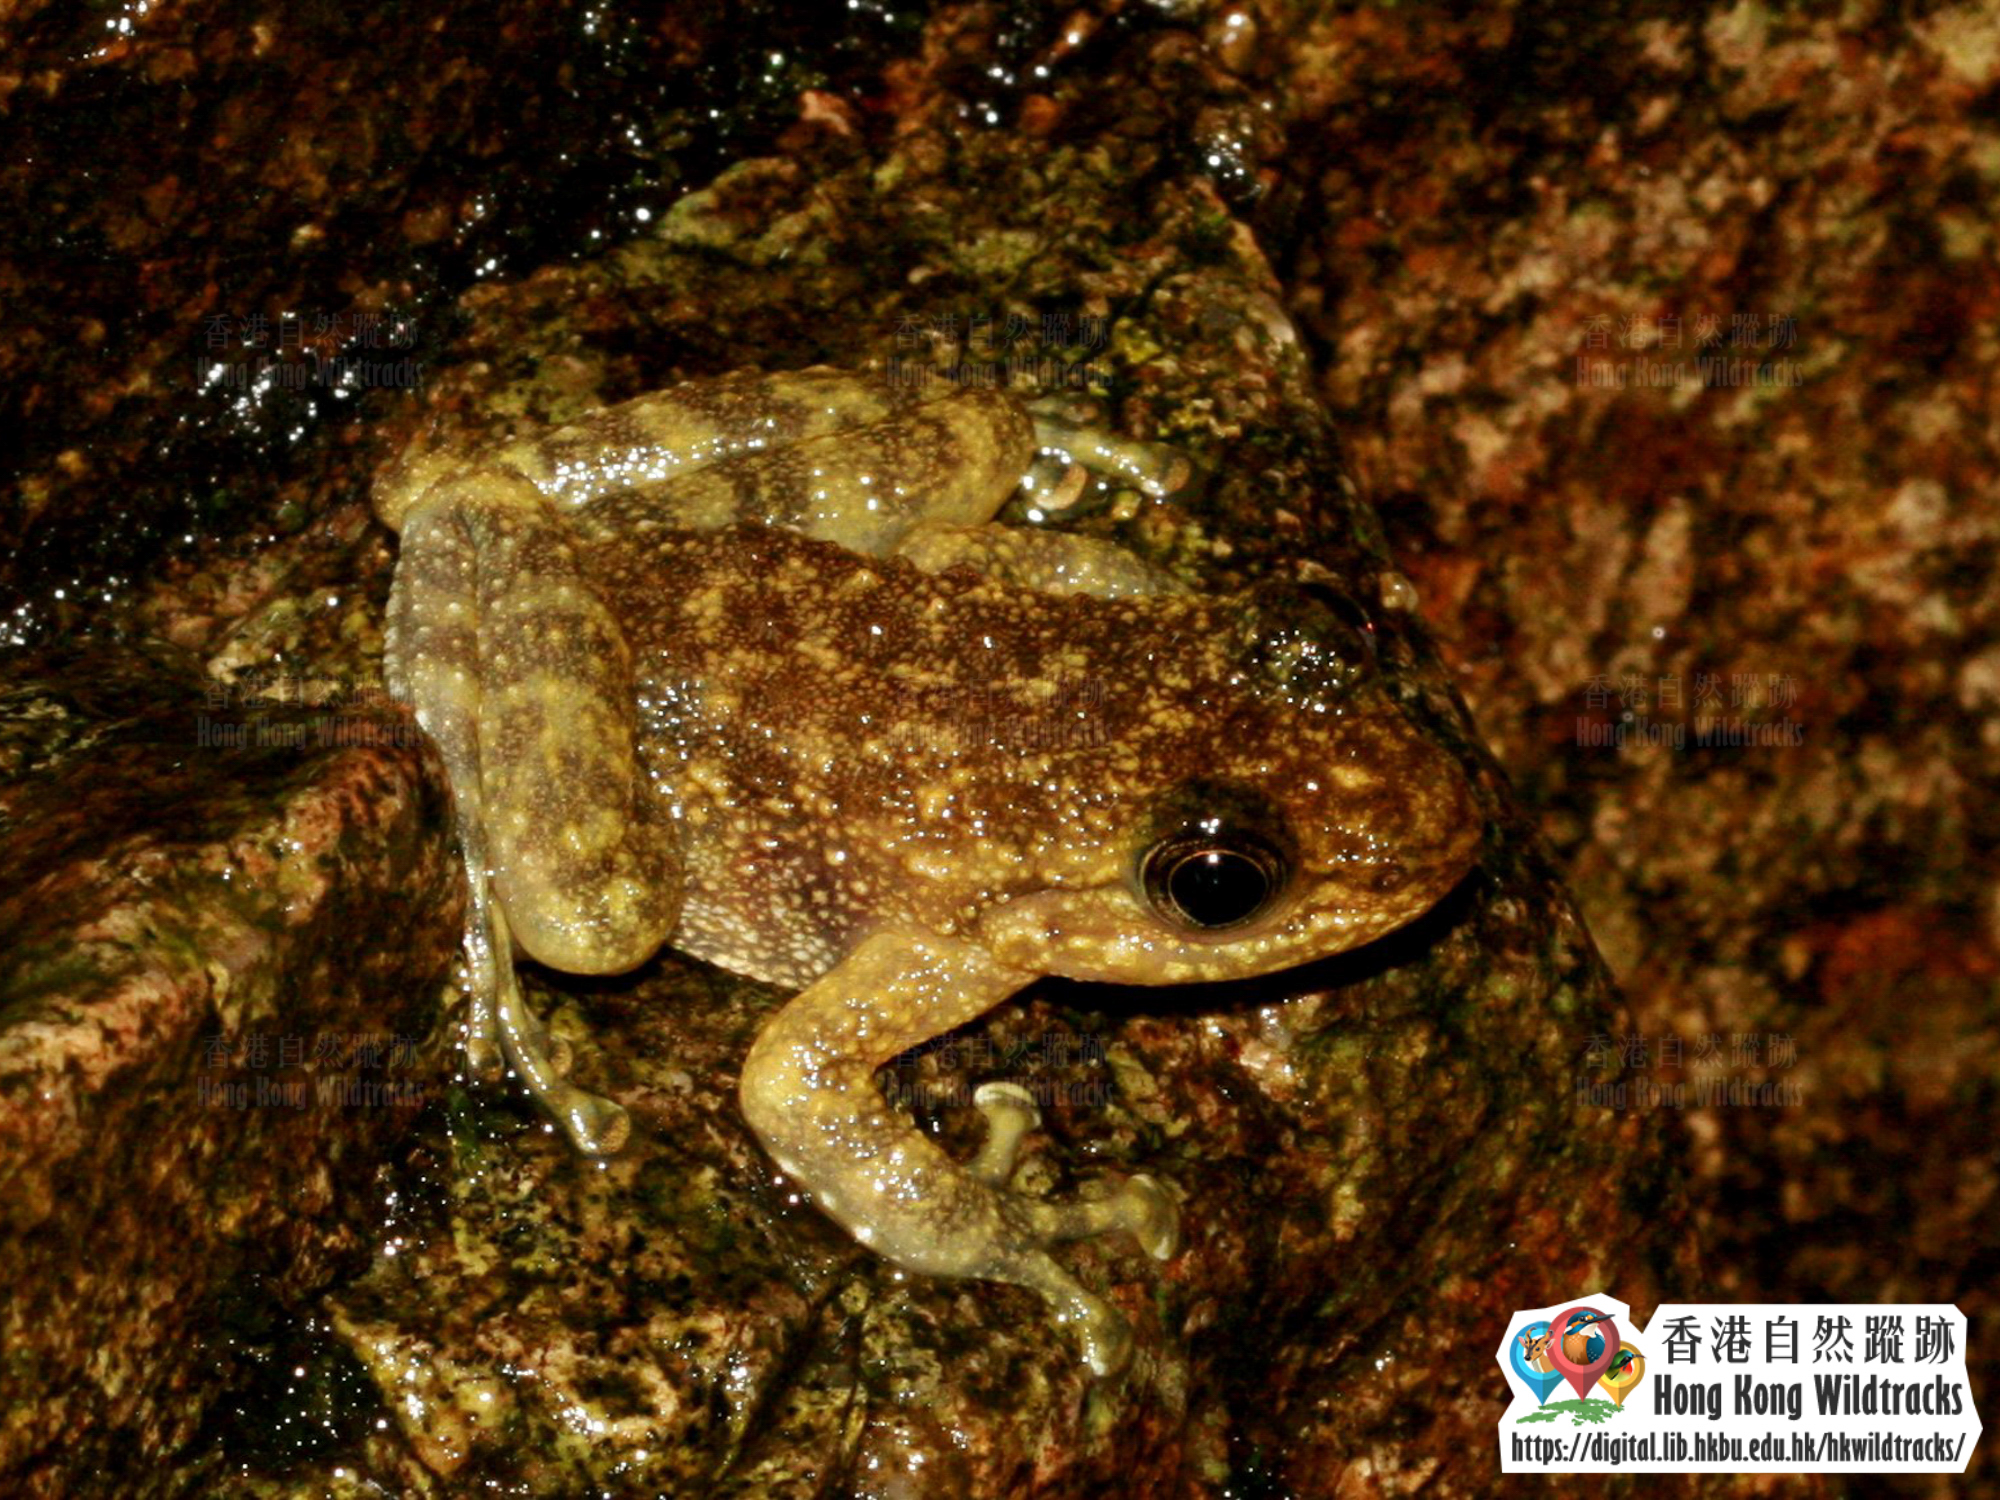 Hong Kong Cascade Frog Photo credit:  Ivan Tse